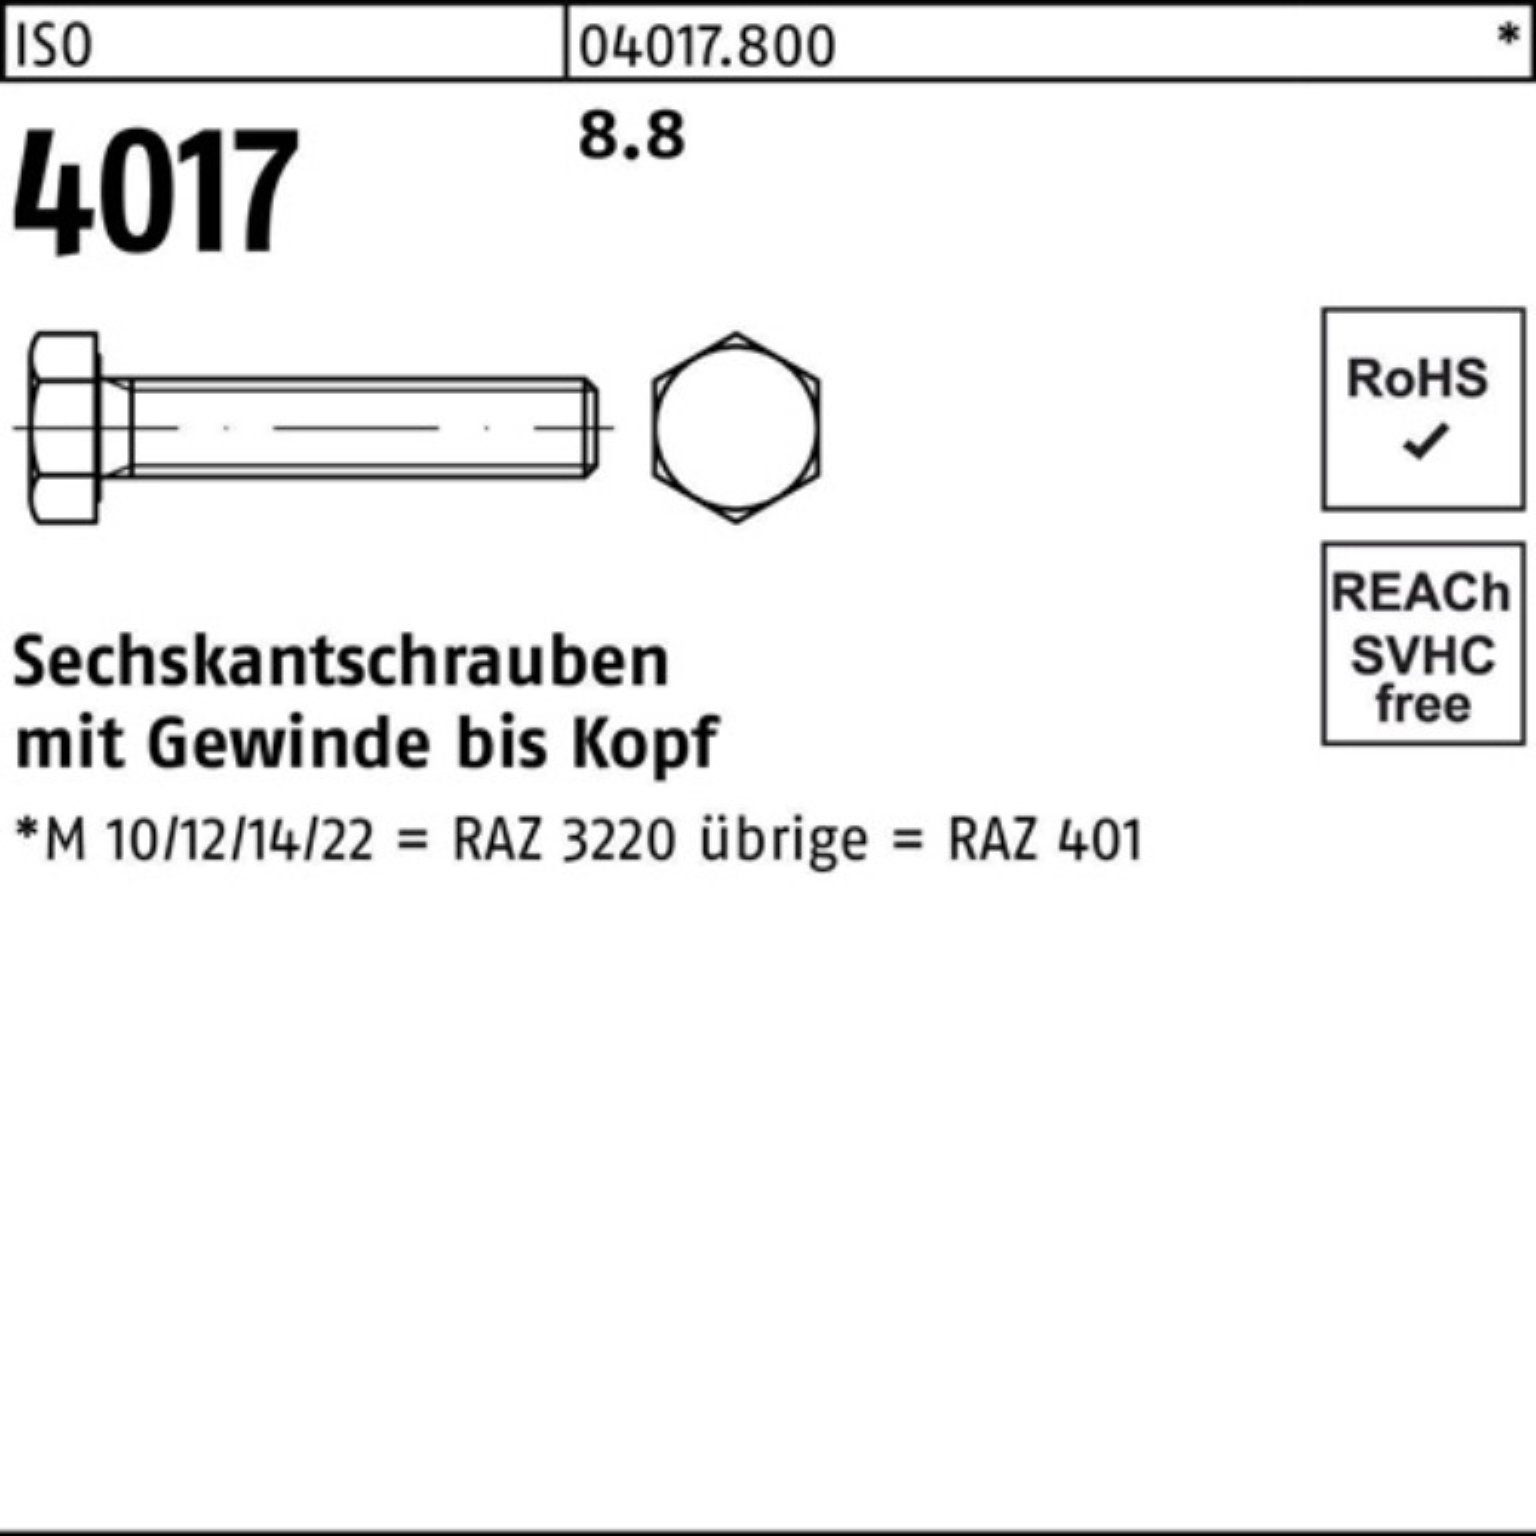 Bufab Sechskantschraube Sechskantschraube Stück ISO 500er VG 4017 8.8 50 500 Pack 401 M4x ISO